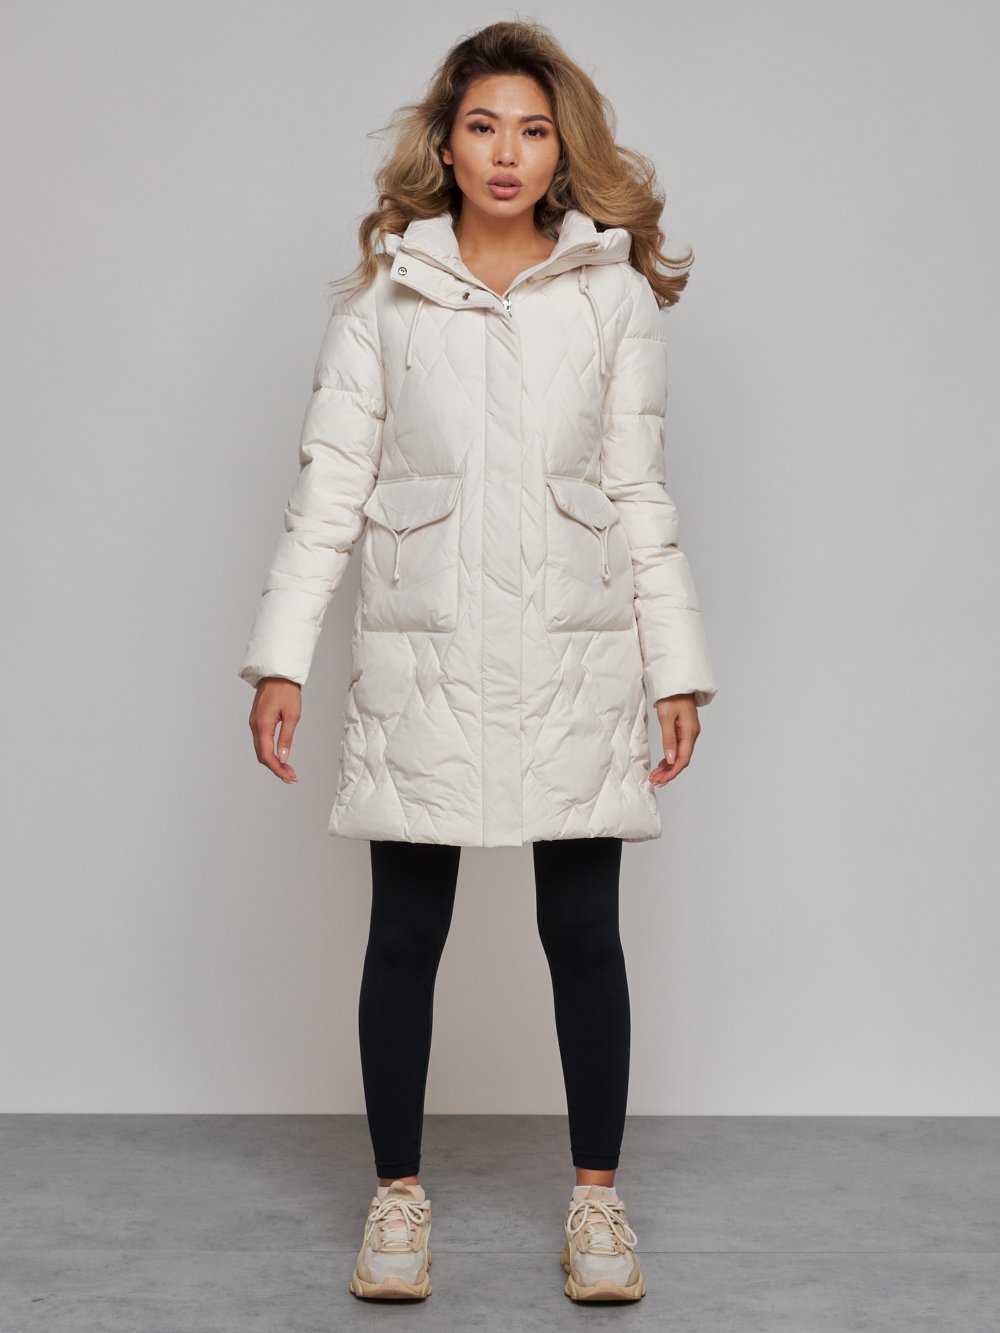 Купить оптом Зимняя женская куртка молодежная с капюшоном бежевого цвета 586832B в Екатеринбурге